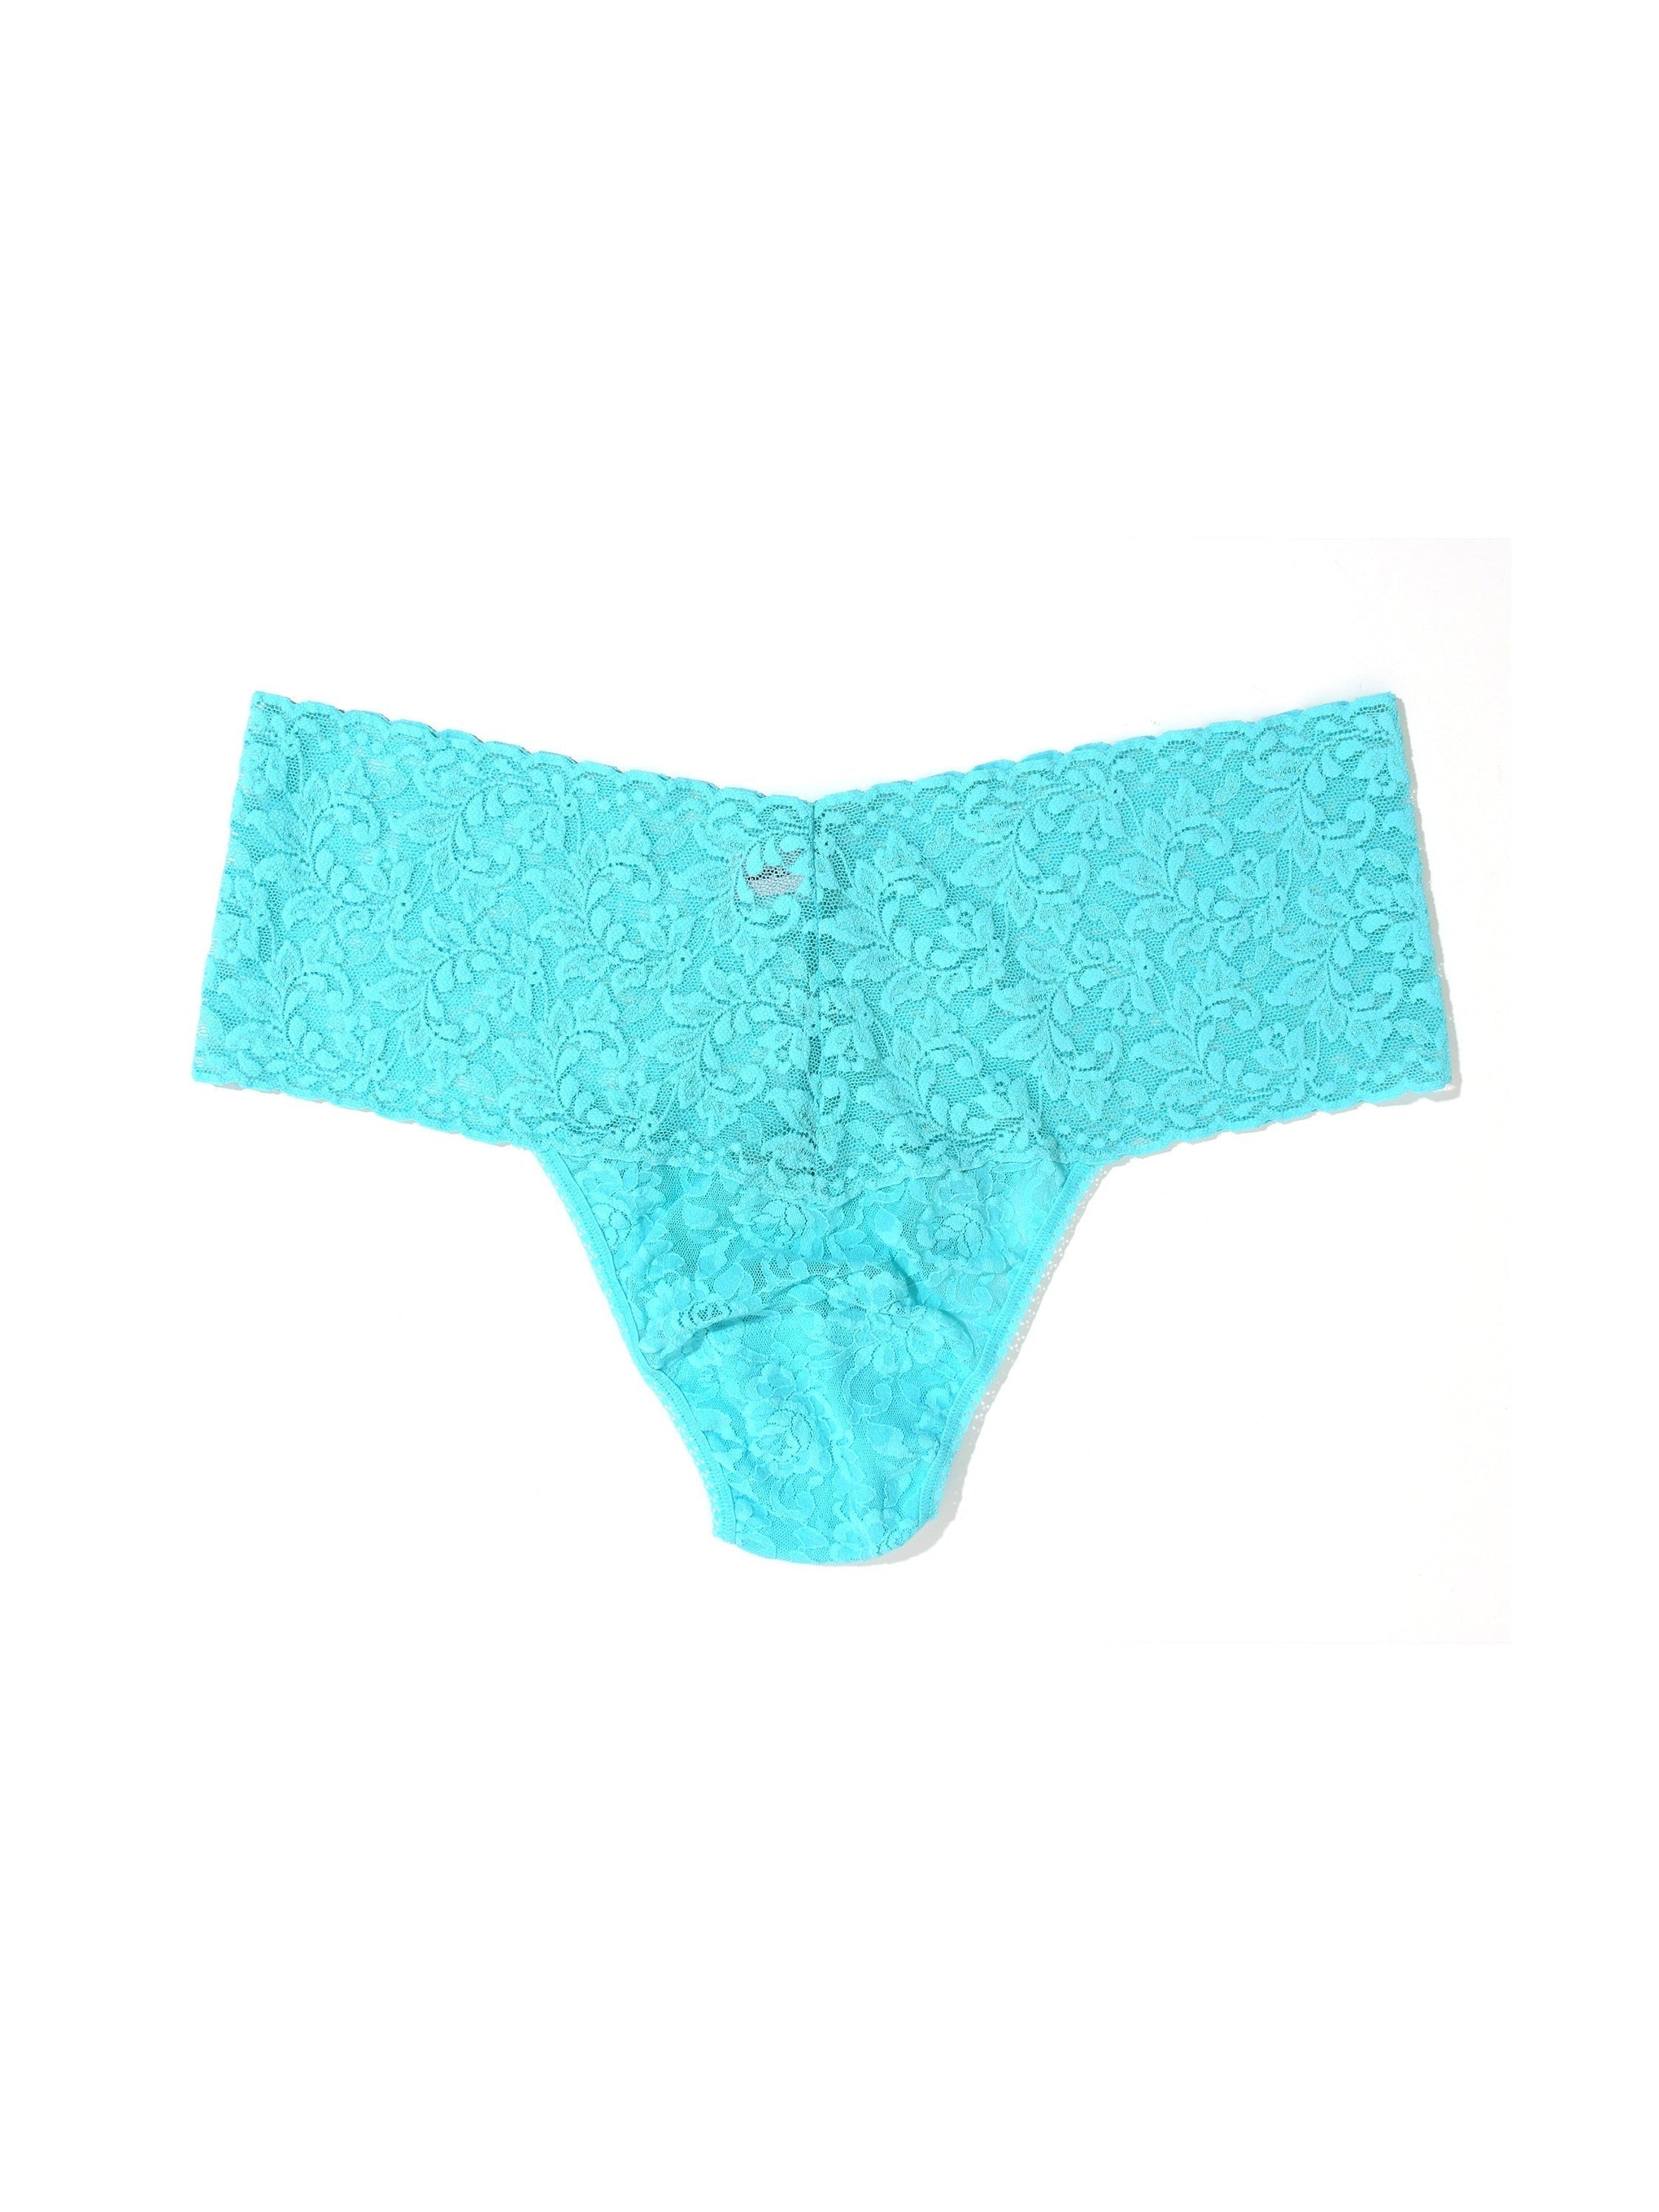 Plus Size Retro Lace Thong Aquatic Blue Sale